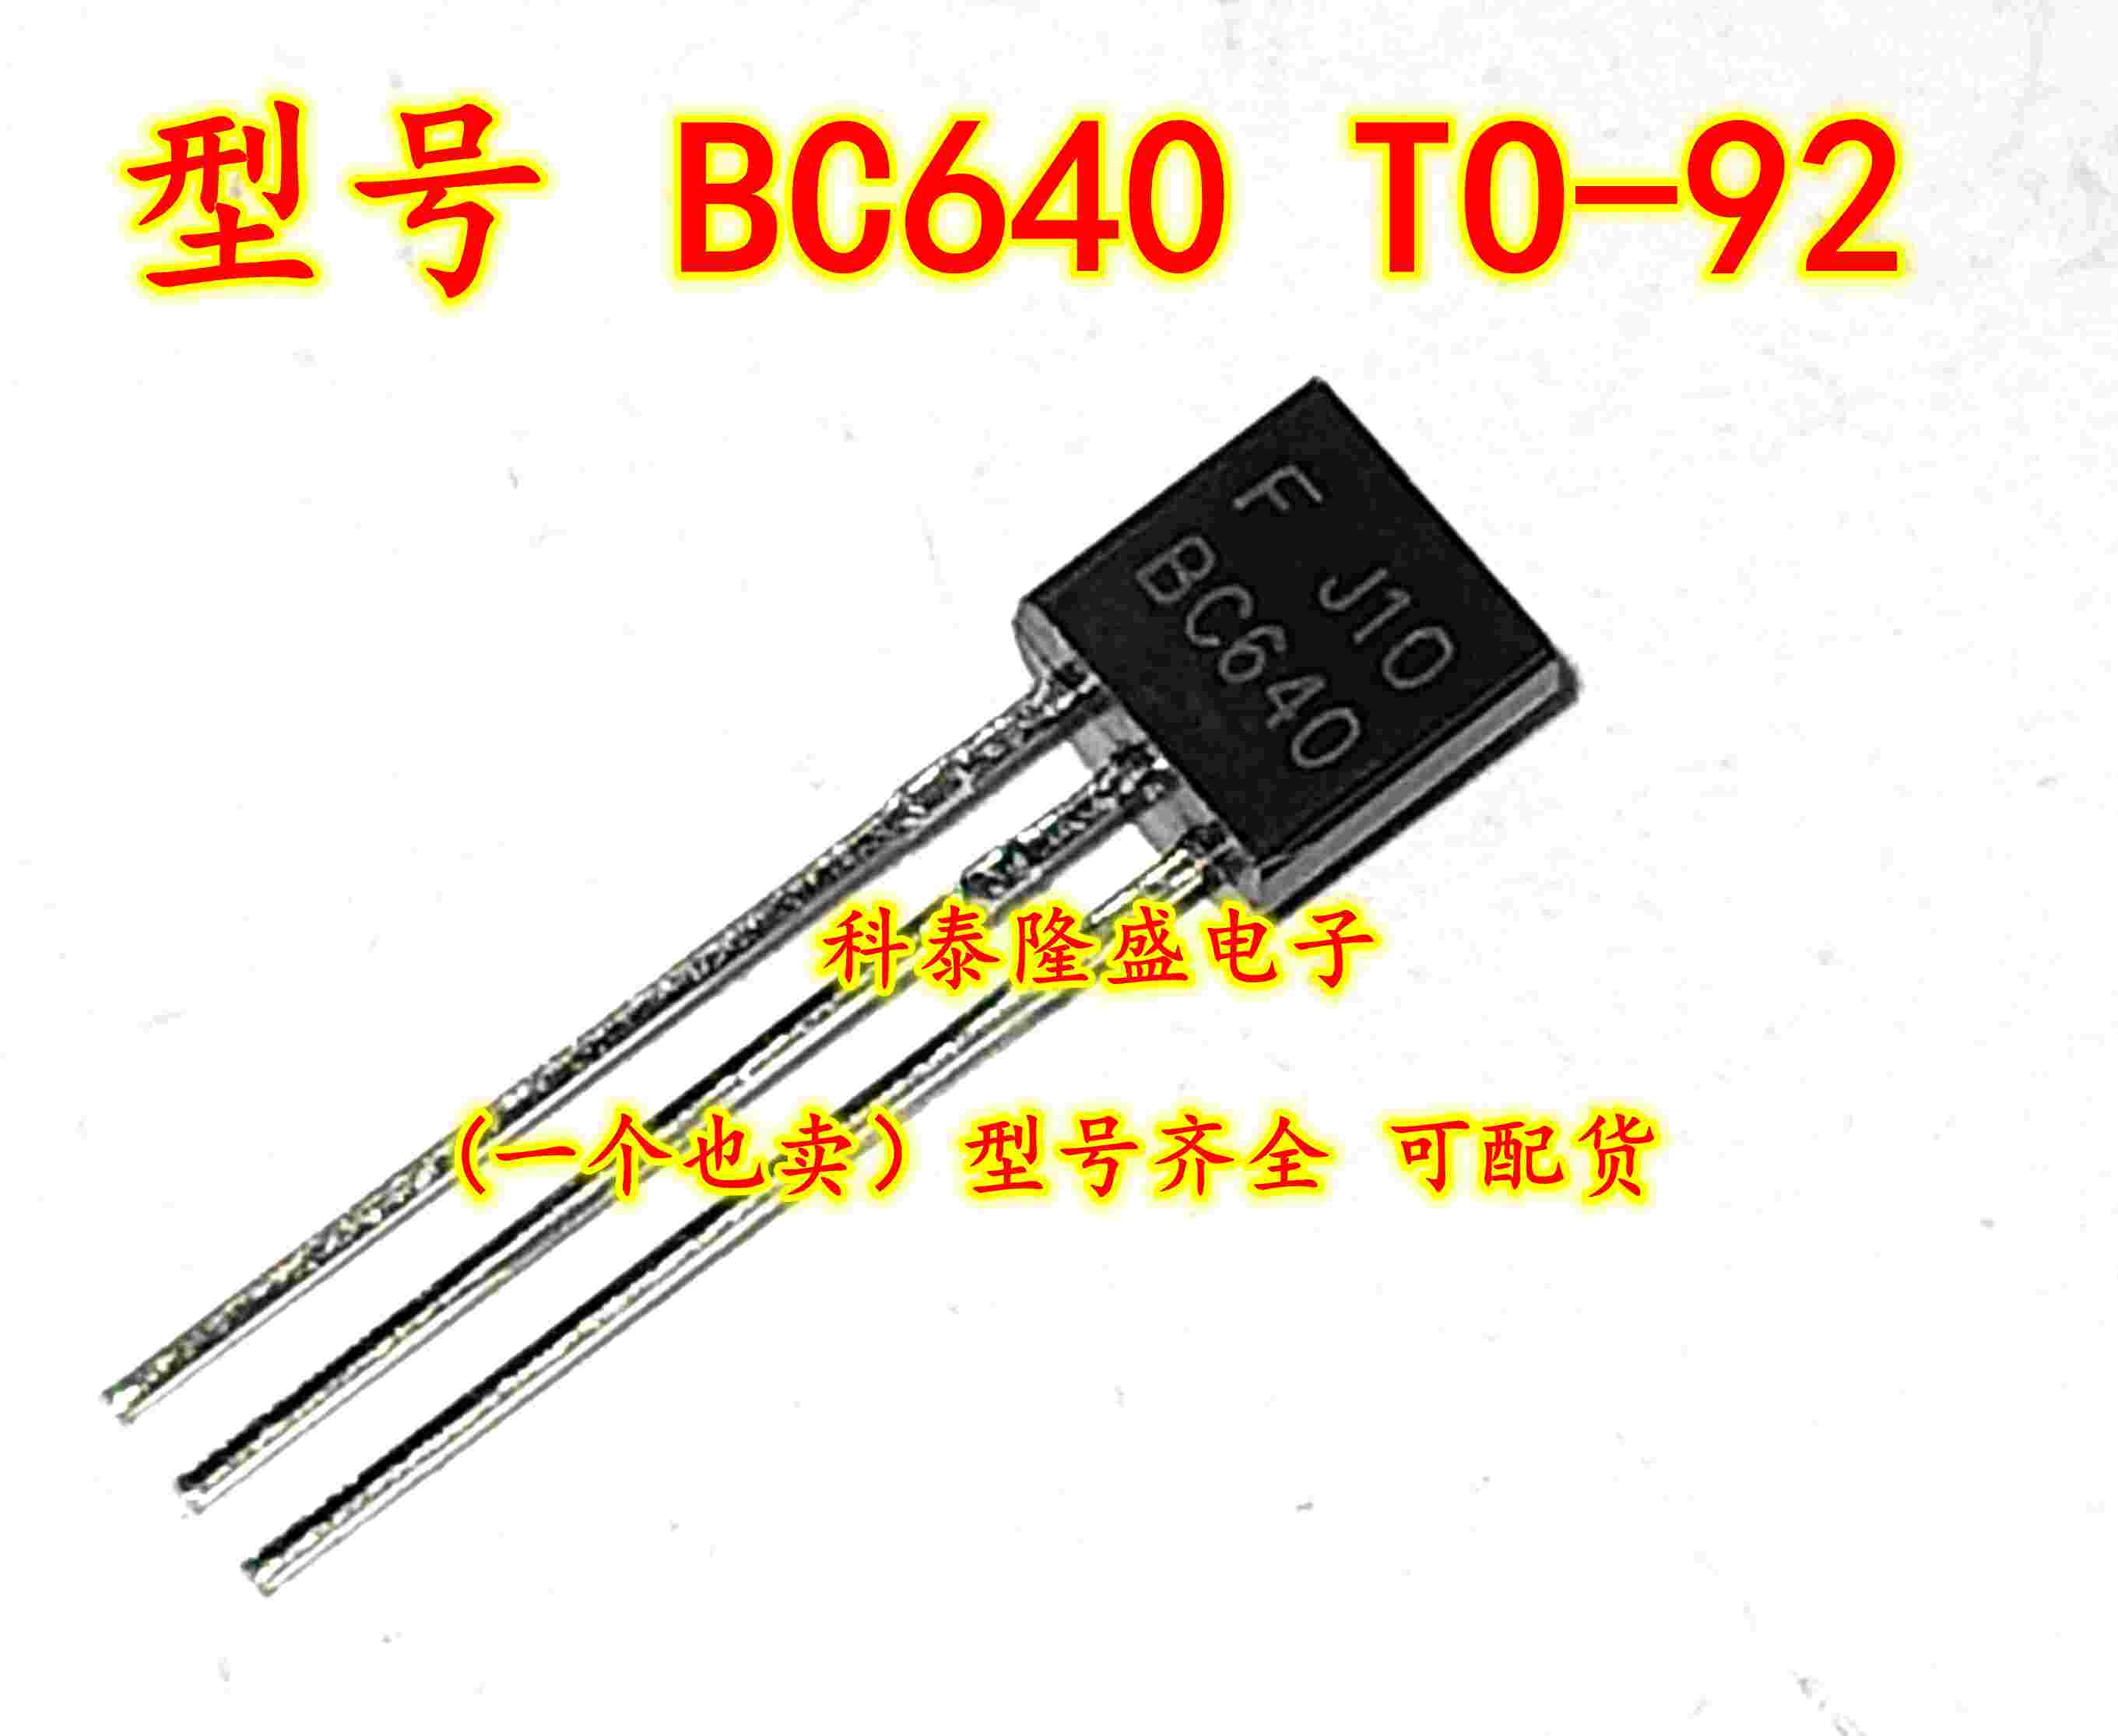 全新原装 BC640 TO-92电子元件芯片